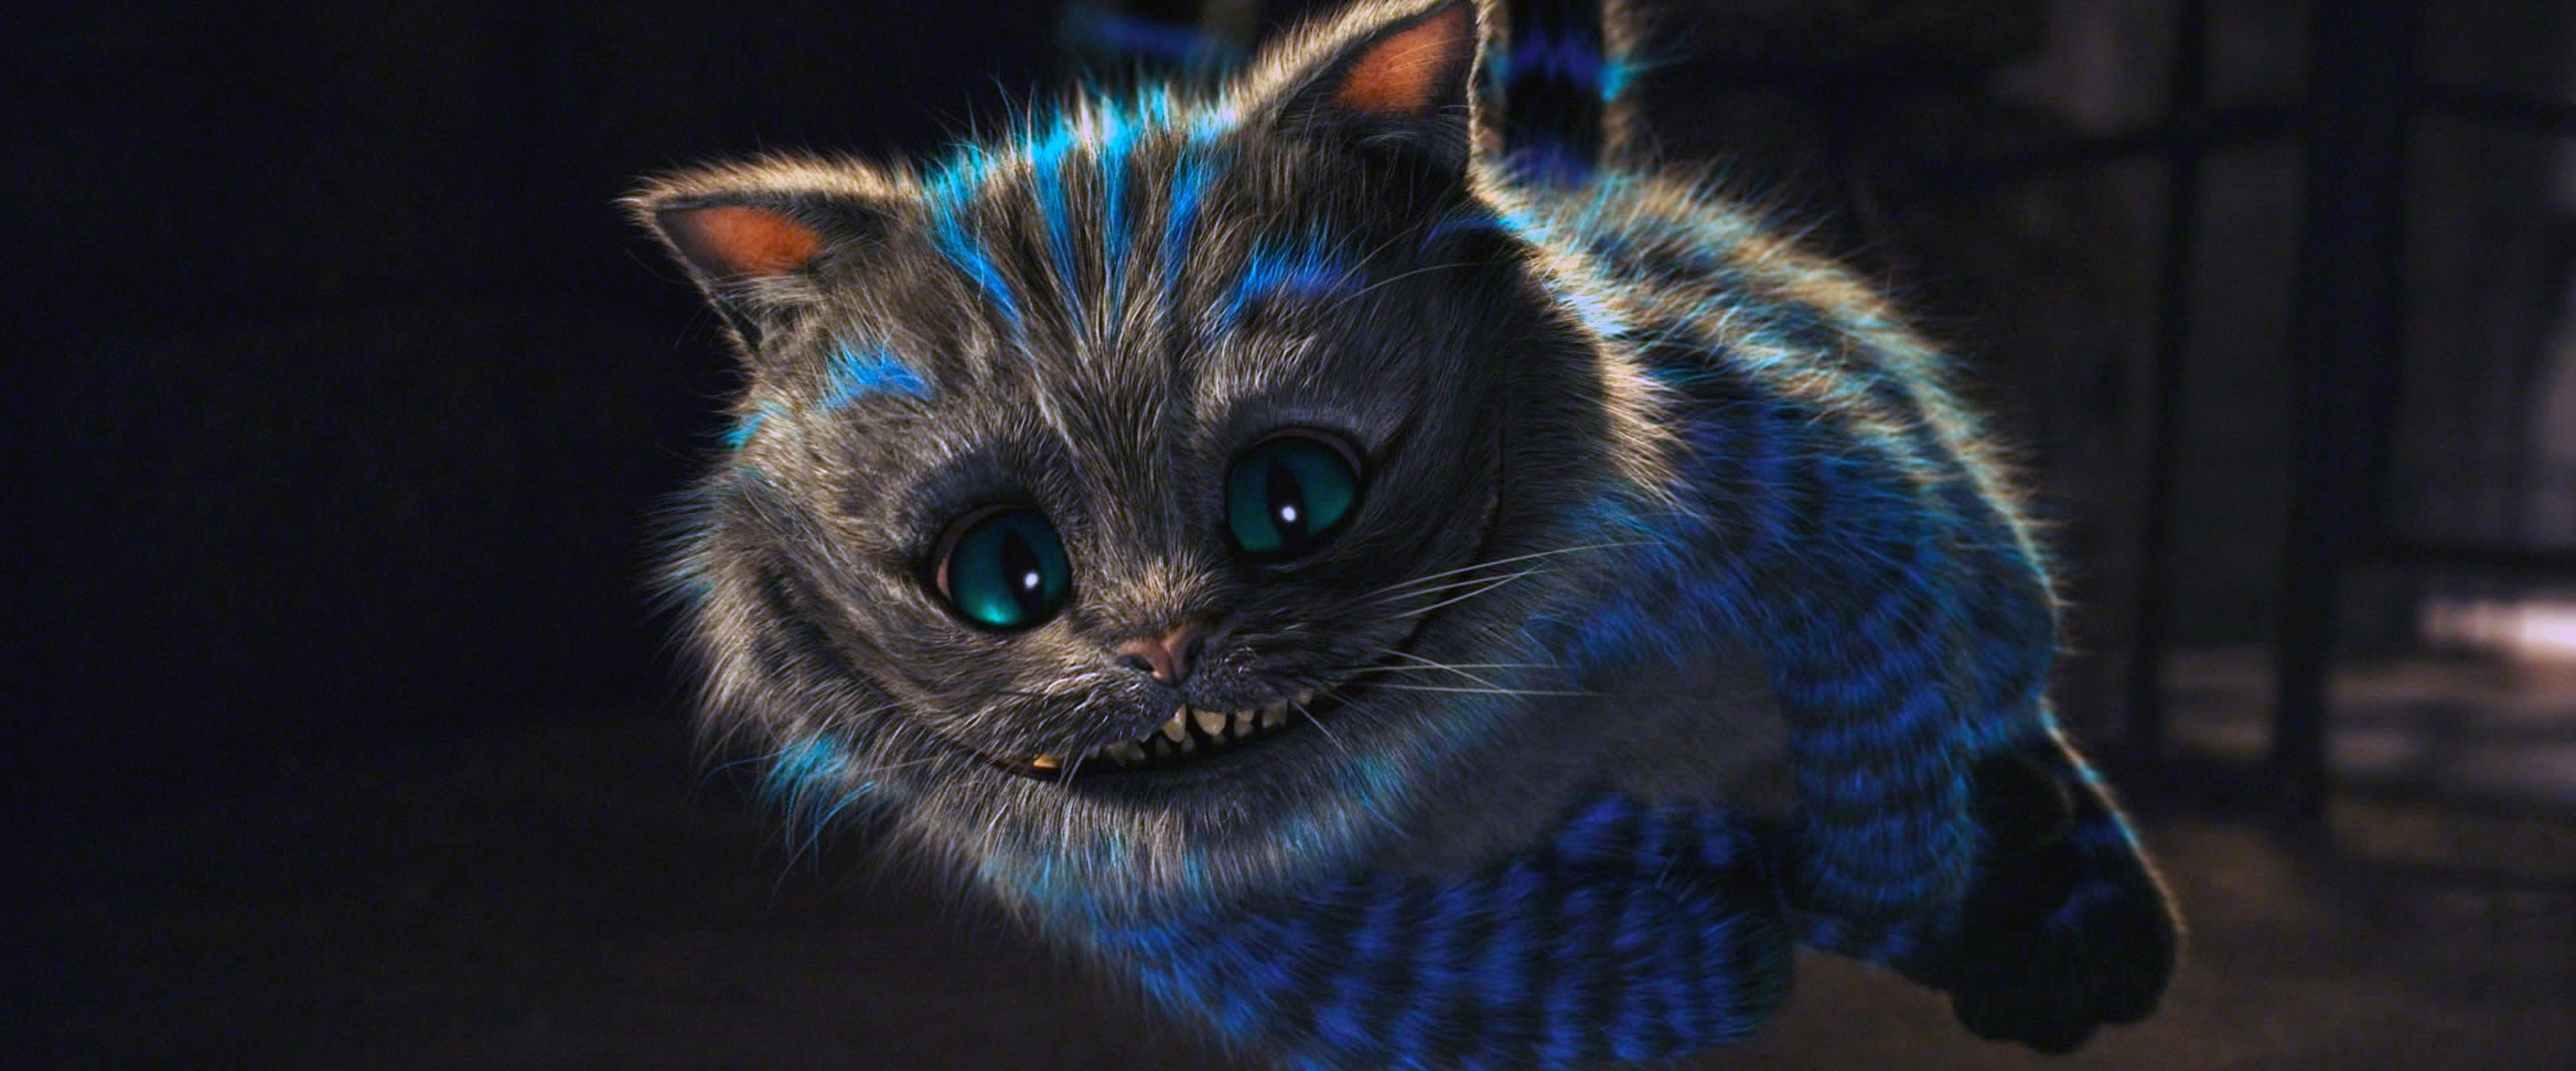 Cheshire Cat Imgur - HD Wallpaper 